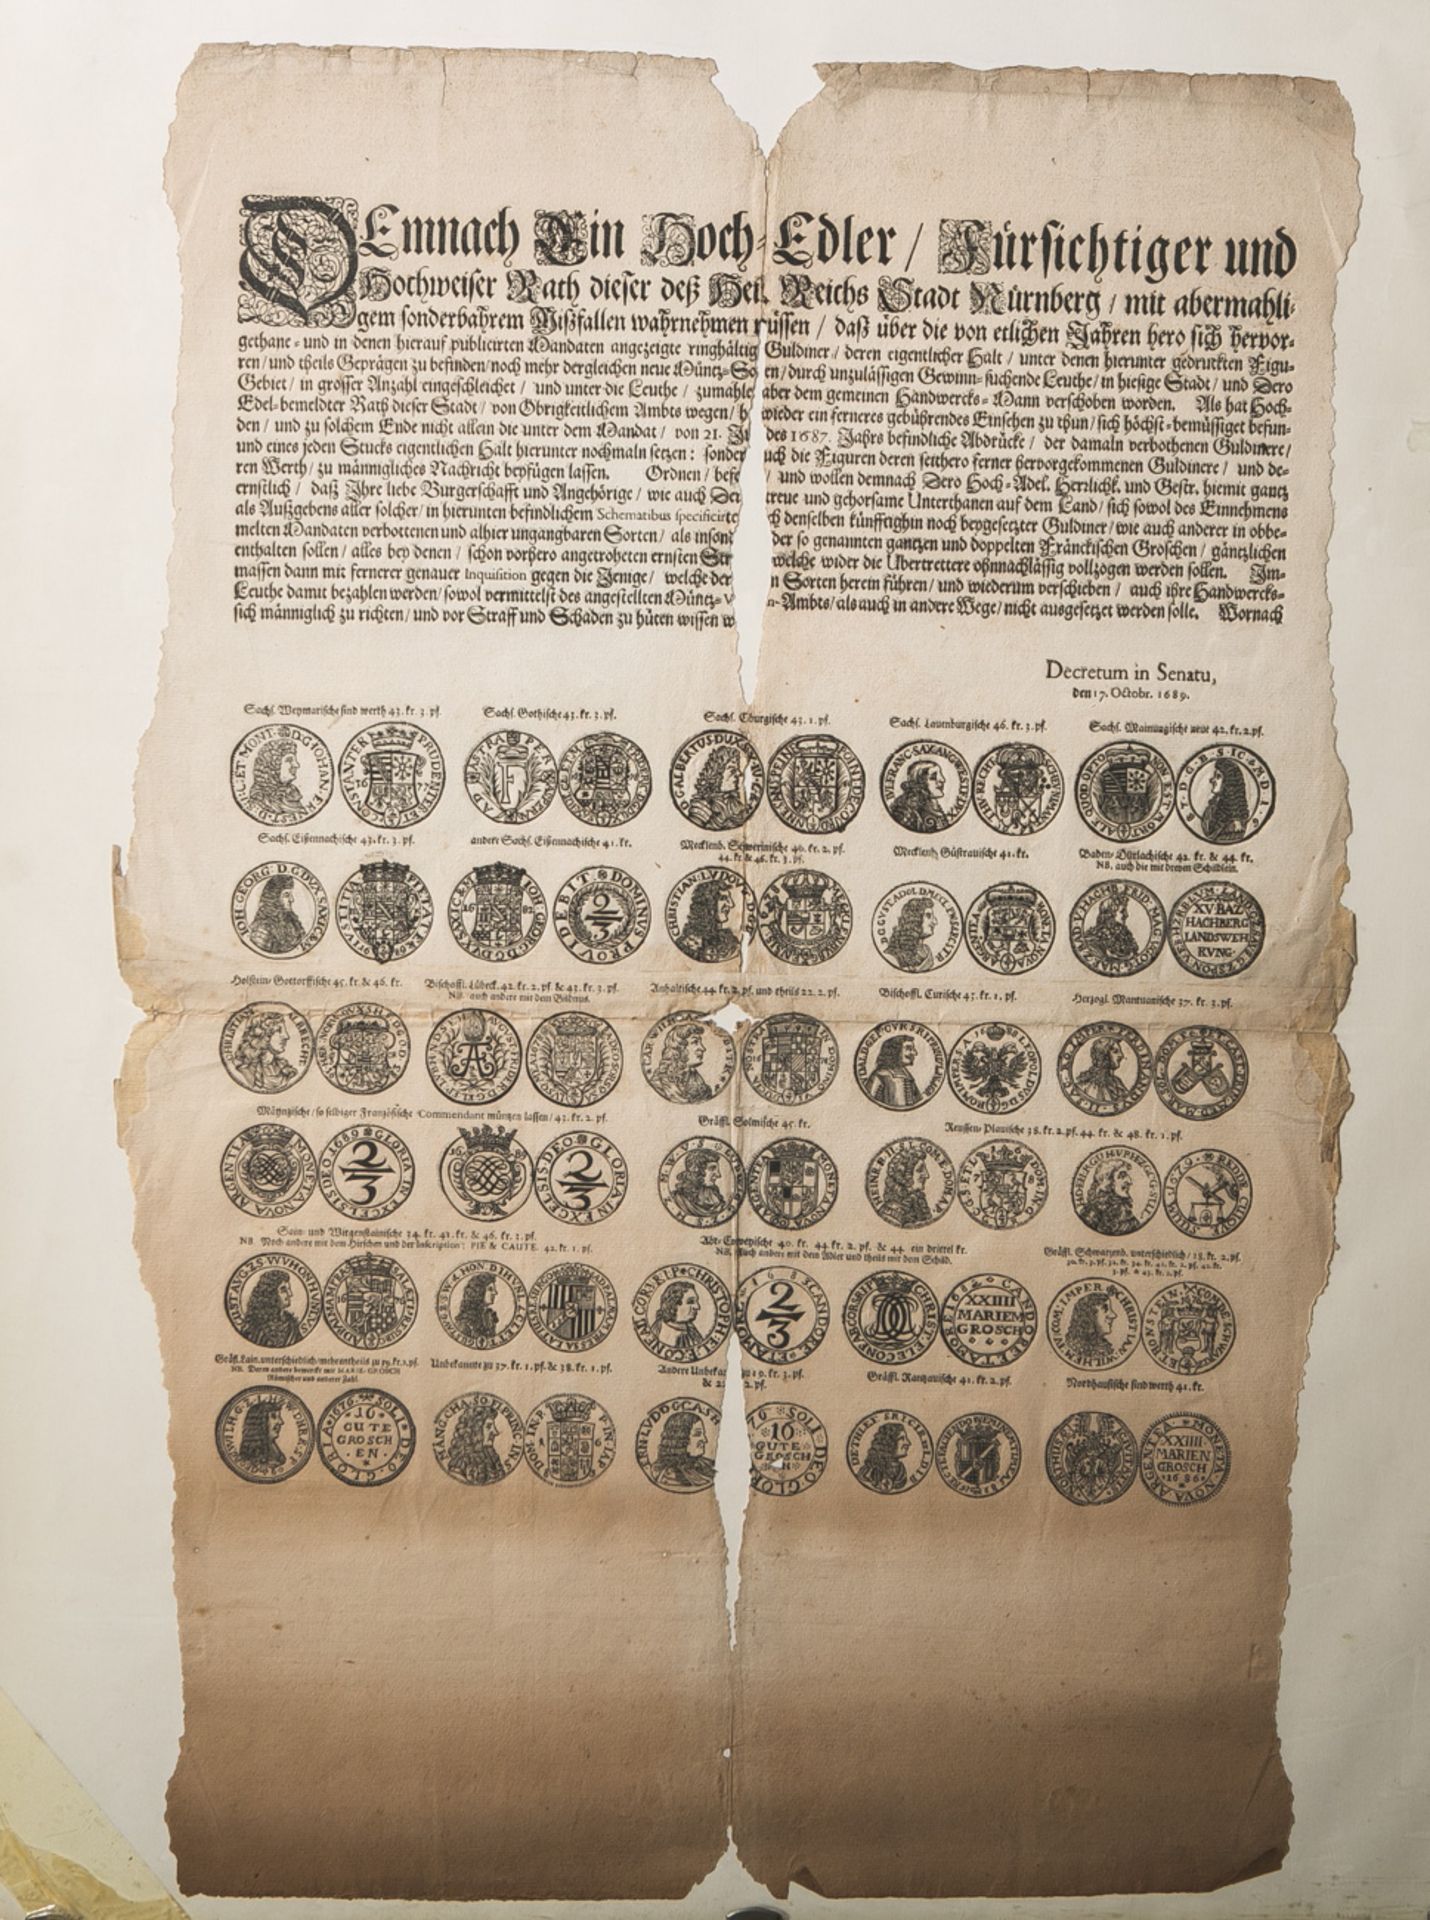 "Decretum in Sentau 1689" (Nürnberg), Einblattdruck m. einigenHolzschnitt-Münzendarstellungen,